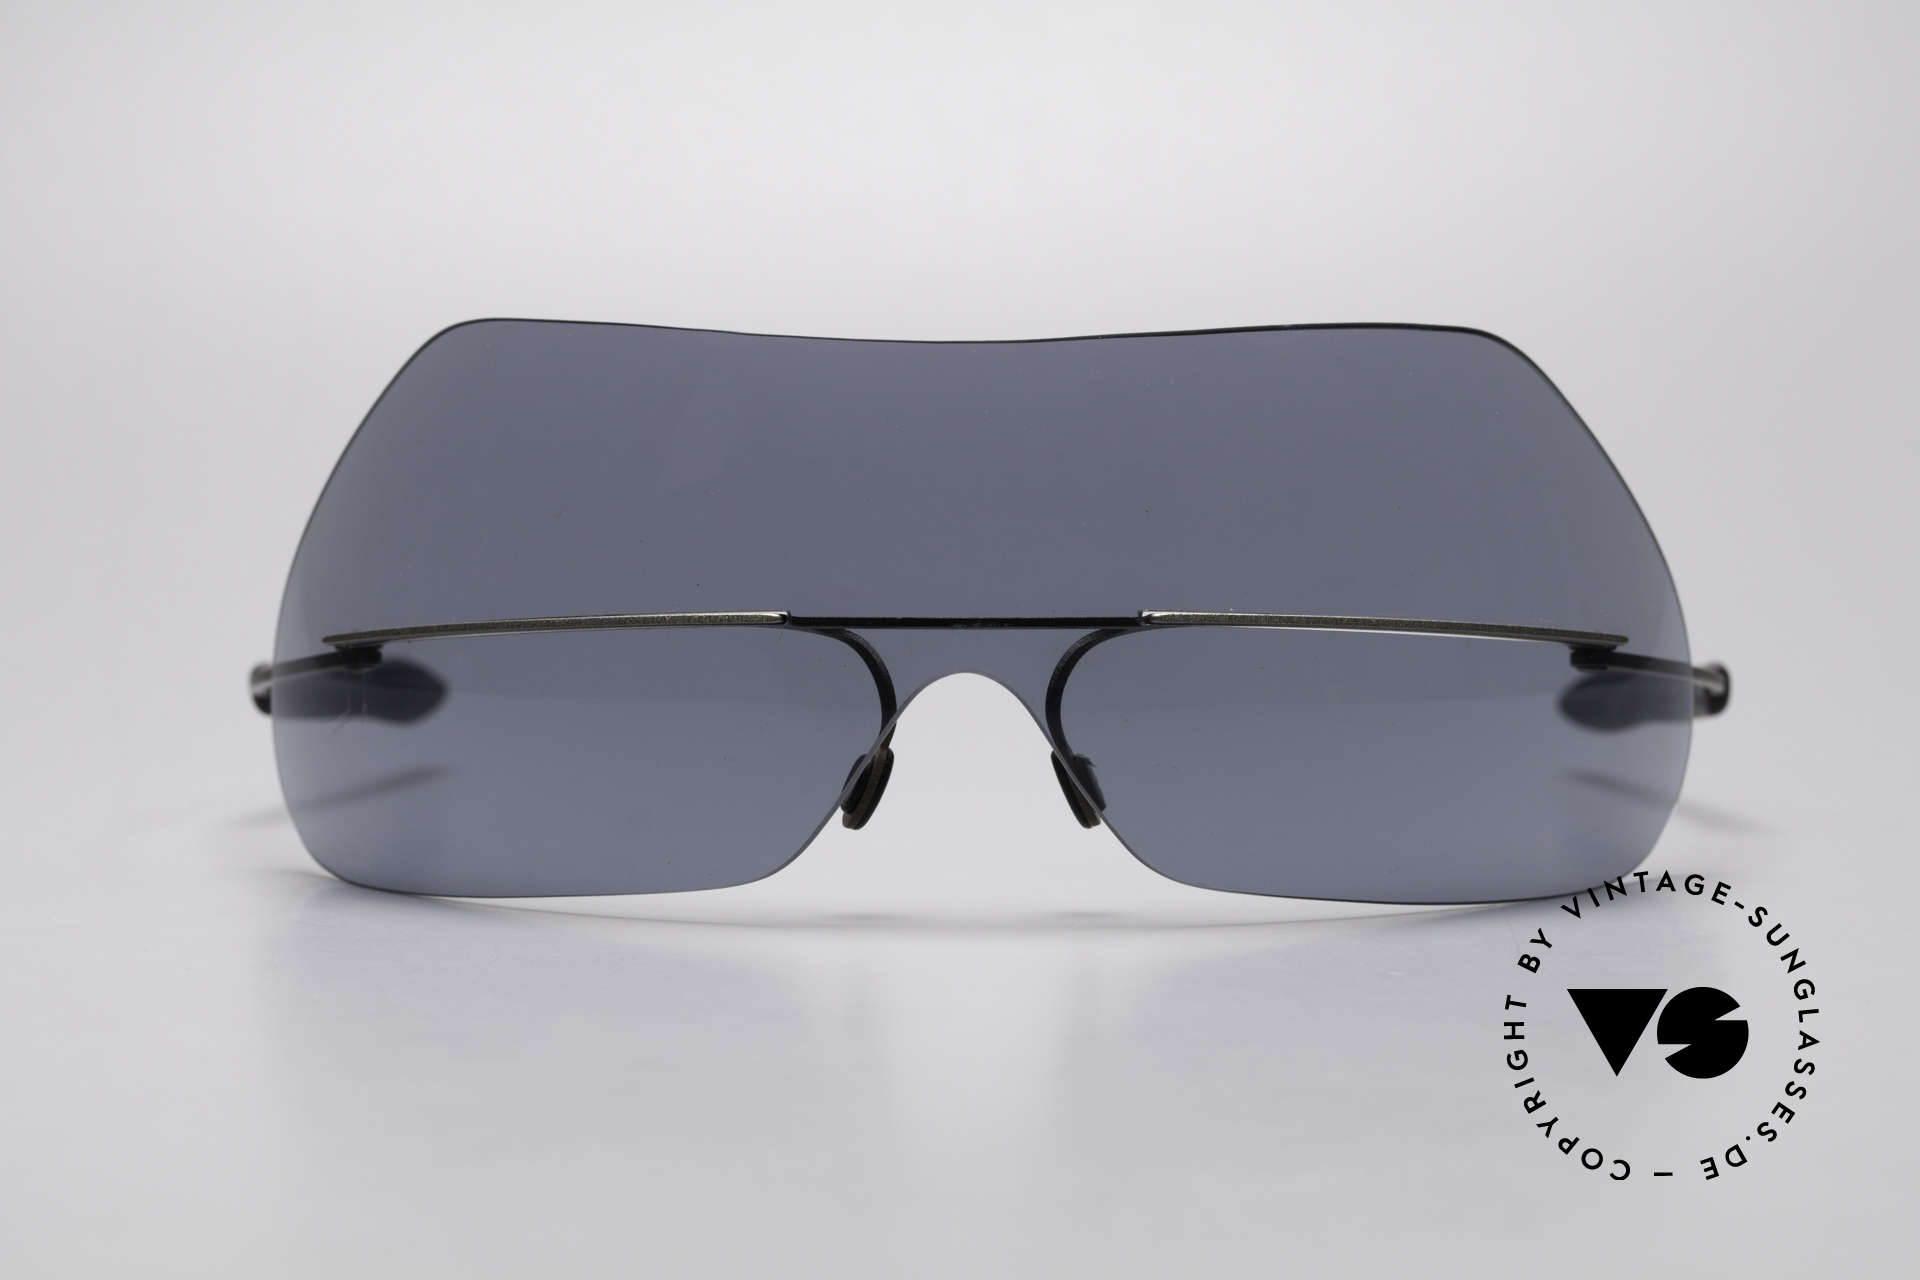 Theo Belgium Satisfashion 138 Sonnenbrille mit Augenbrauen, der Name sagt eigentlich alles ;-) ... SATISFASHION!, Passend für Damen